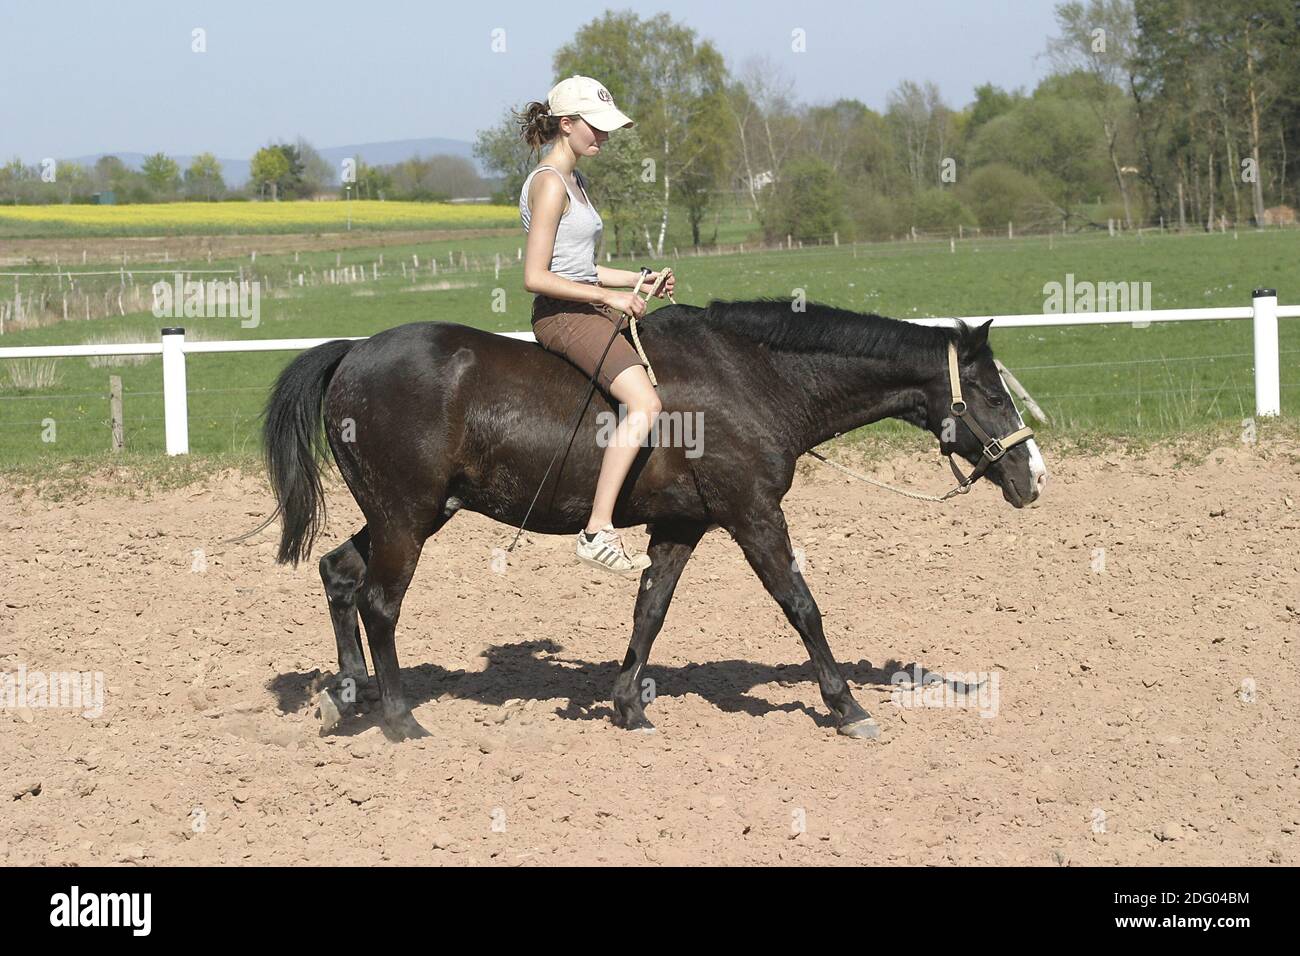 Deutsches Reitpony, German Riding Pony, Riding without Saddle Stock Photo